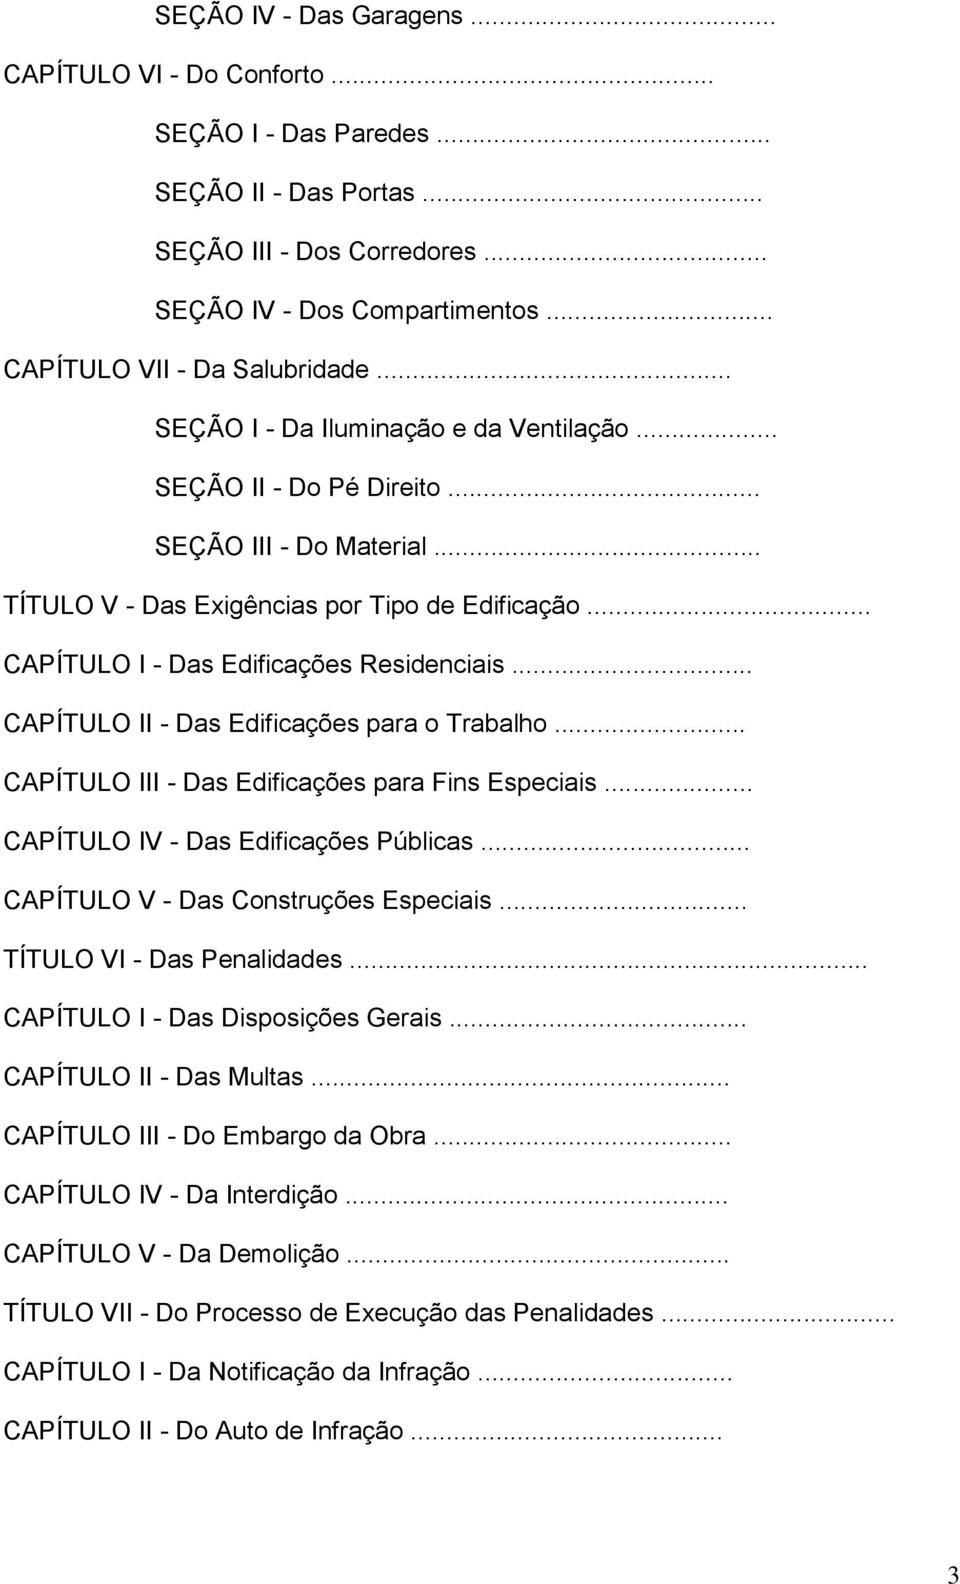 .. CAPÍTULO II - Das Edificações para o Trabalho... CAPÍTULO III - Das Edificações para Fins Especiais... CAPÍTULO IV - Das Edificações Públicas... CAPÍTULO V - Das Construções Especiais.